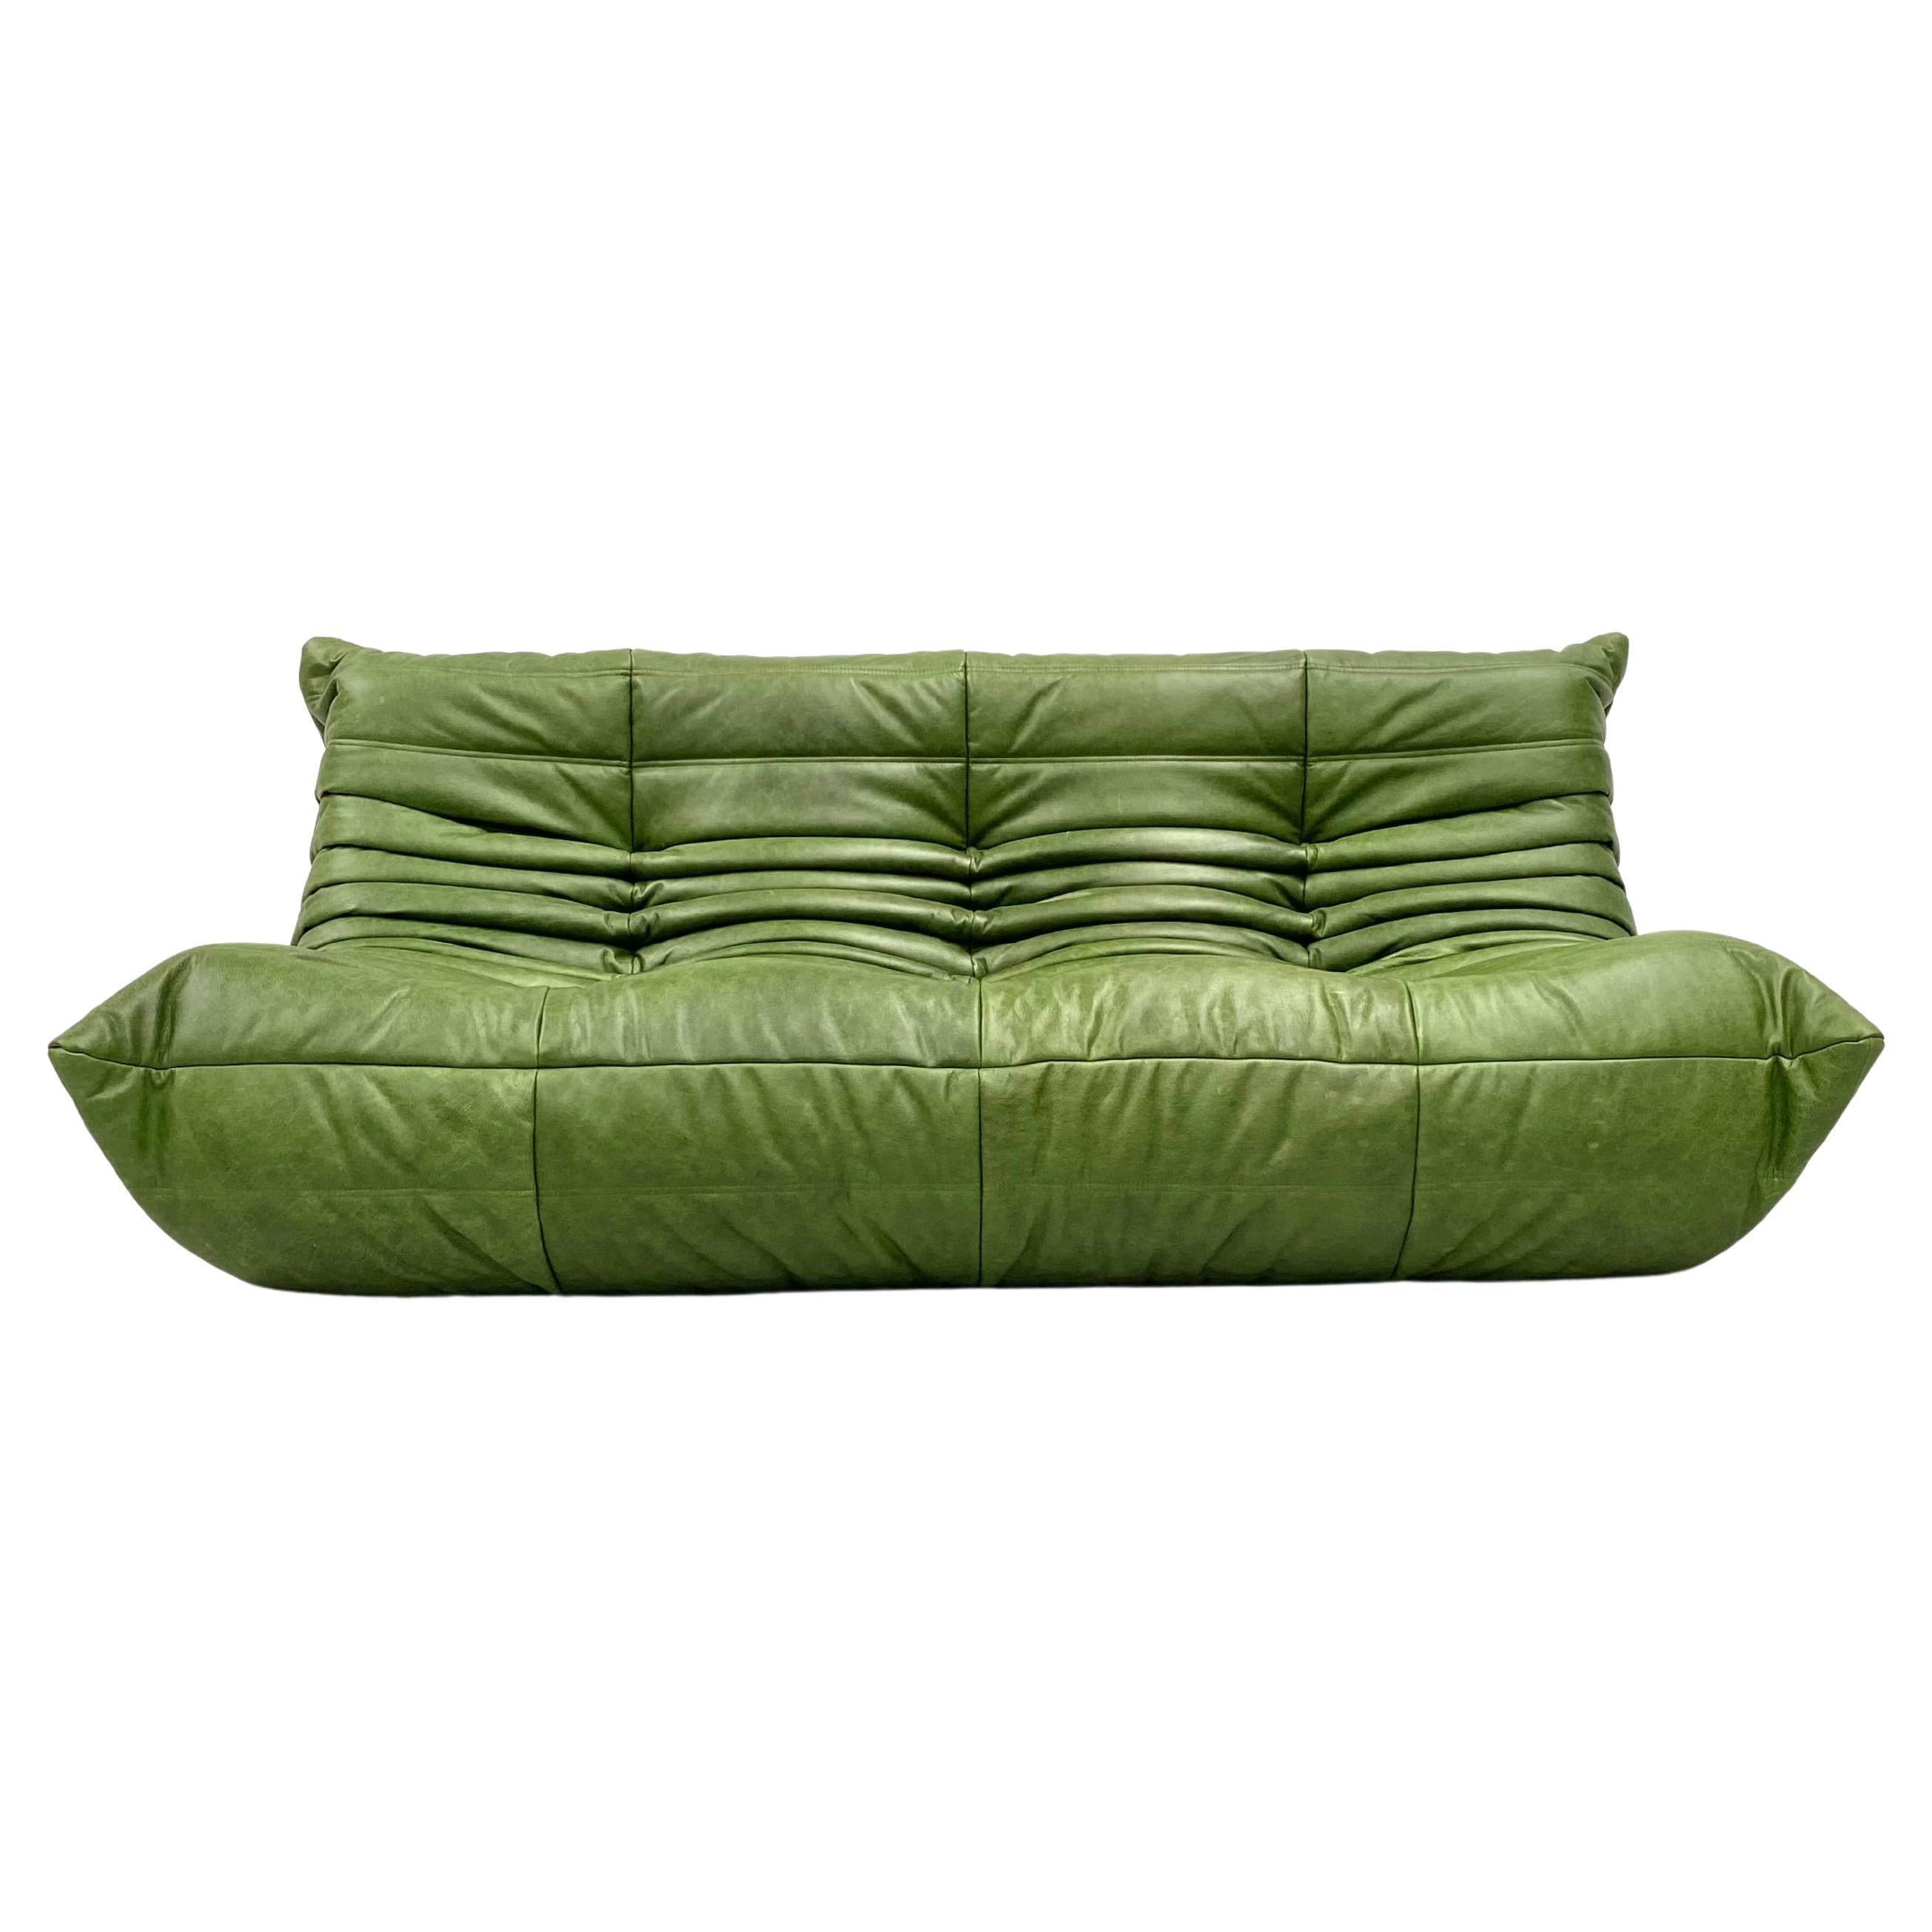 Französisch  Togo-Sofa in Grün  Leder von Michel Ducaroy für Ligne Roset.